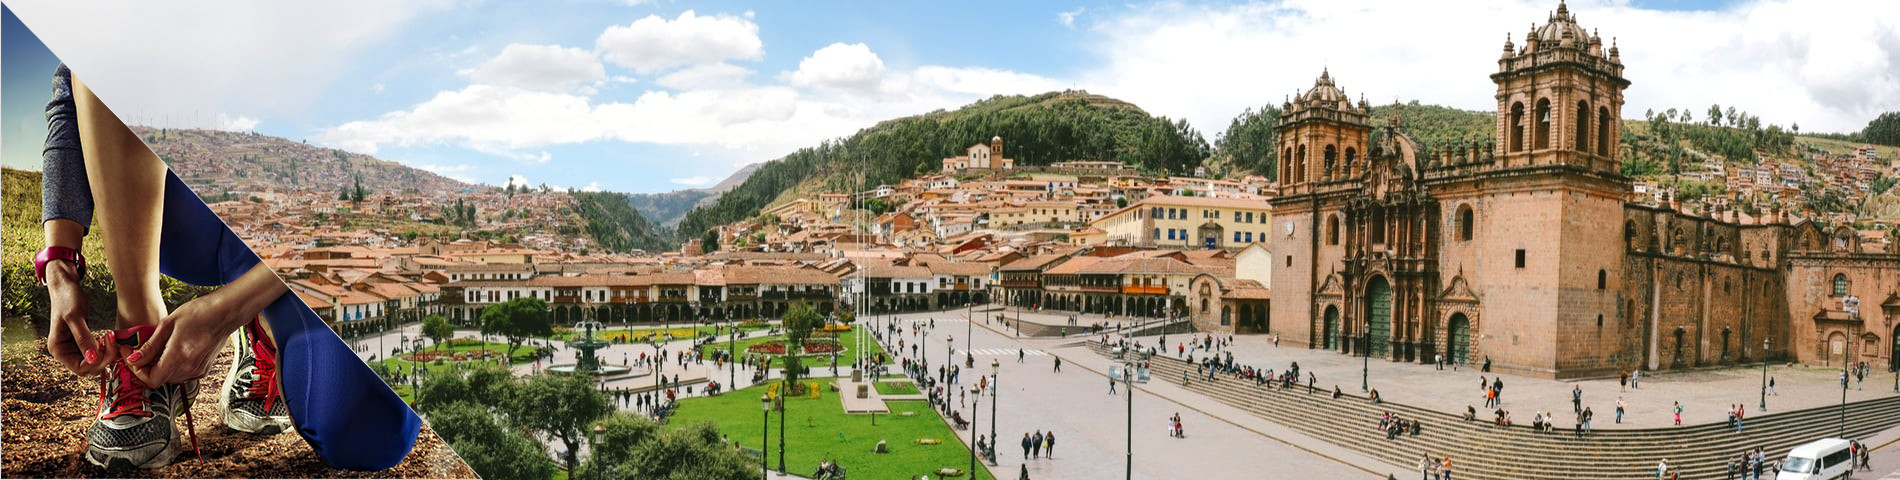 Cuzco - Espanhol & Outros Esportes